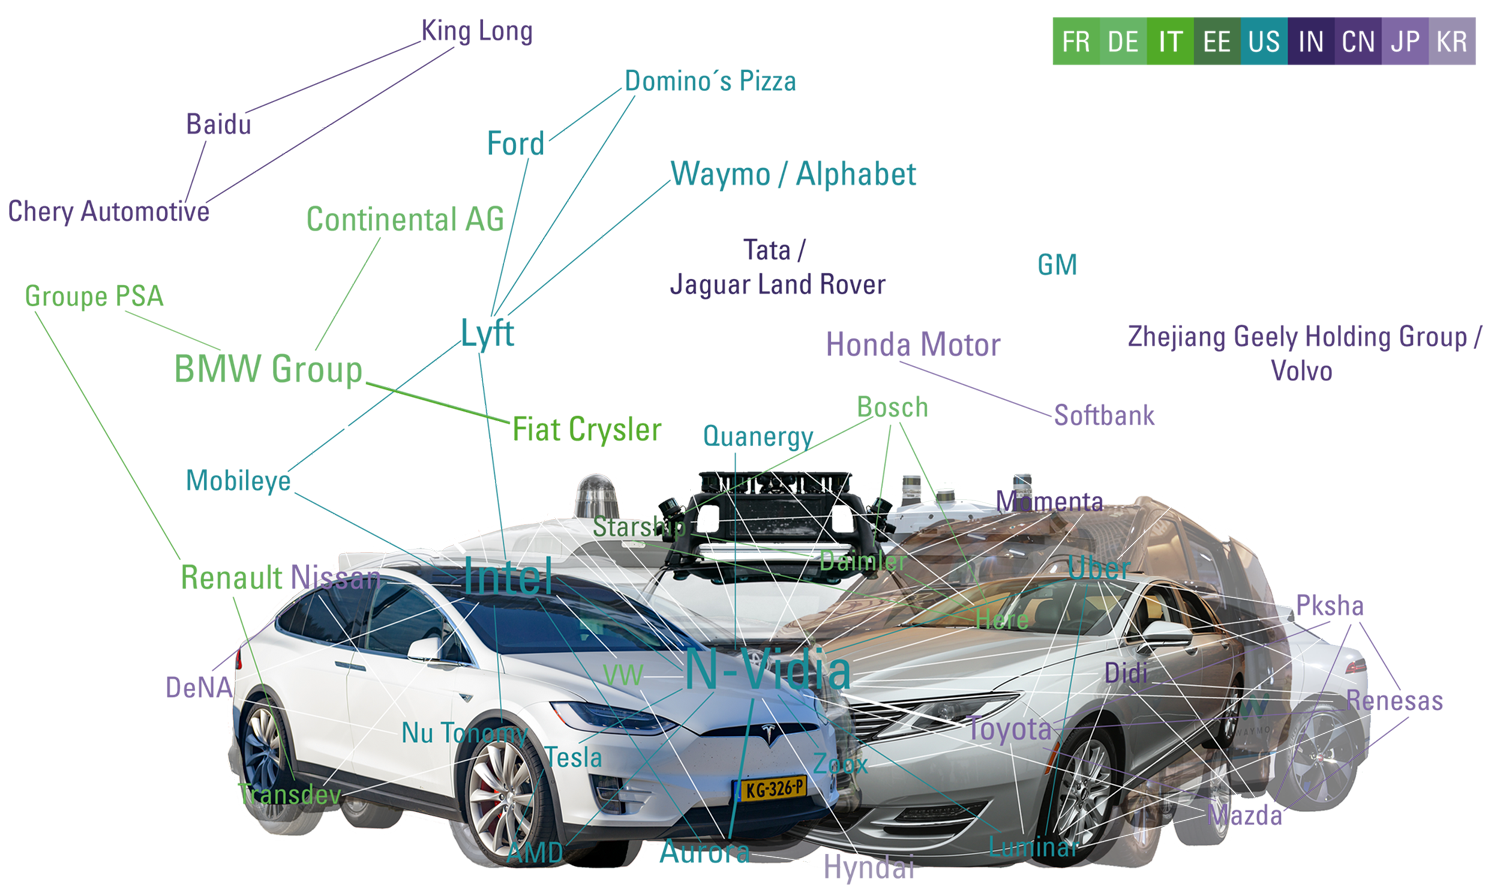 Tech heiratet Automotive - Netzdiagramm: Darstellung der Nationalitäten der unterschiedlichen AV-Player____by yuyun, form:f - critical design